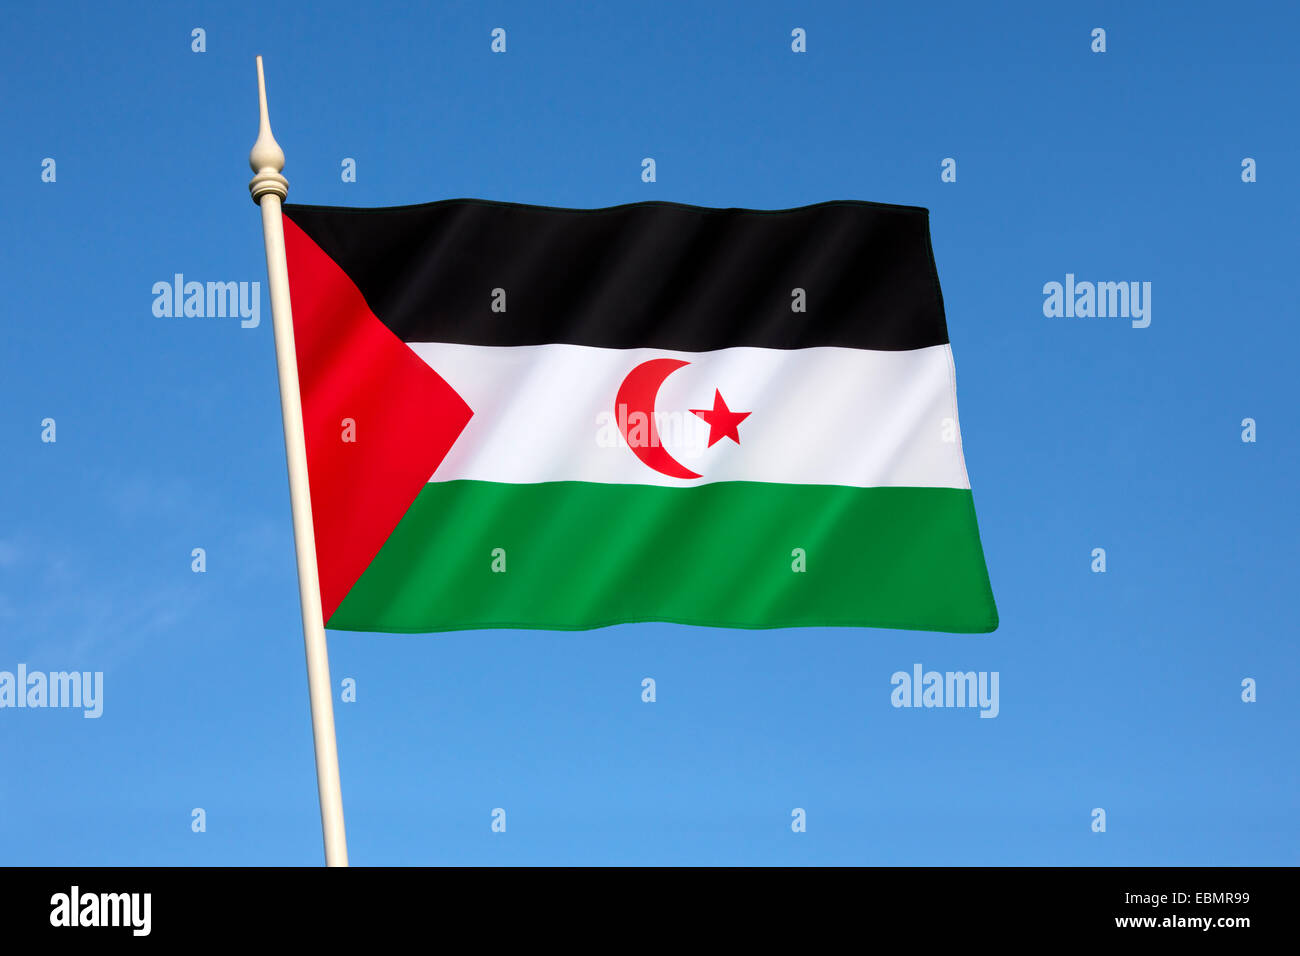 Drapeau de la République Arabe Sahraouie Démocratique - Sahara Occidental Banque D'Images